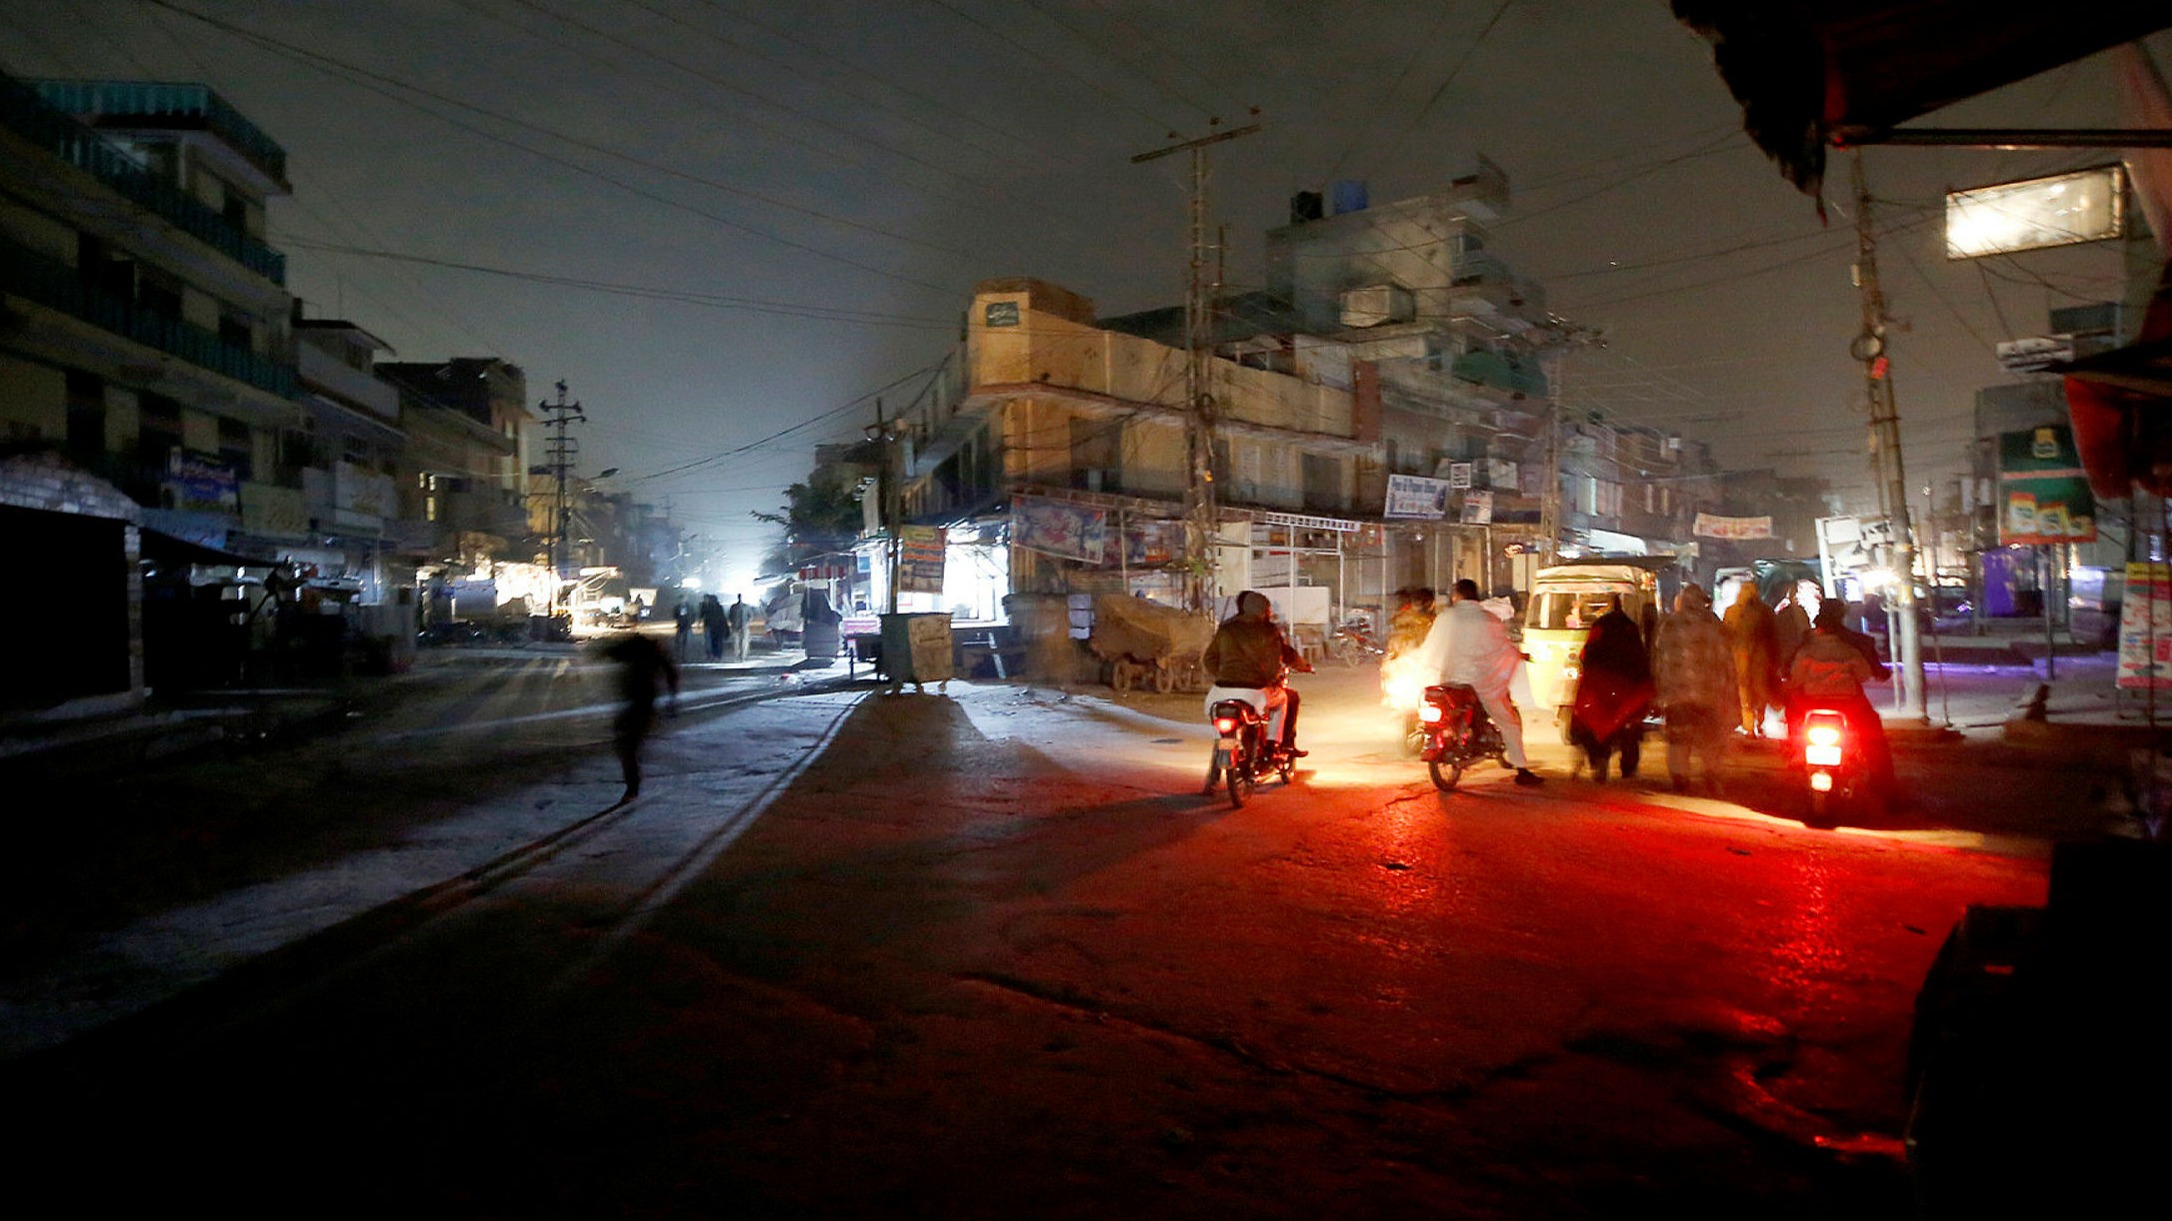 انقطاع الكهرباء في باكستان